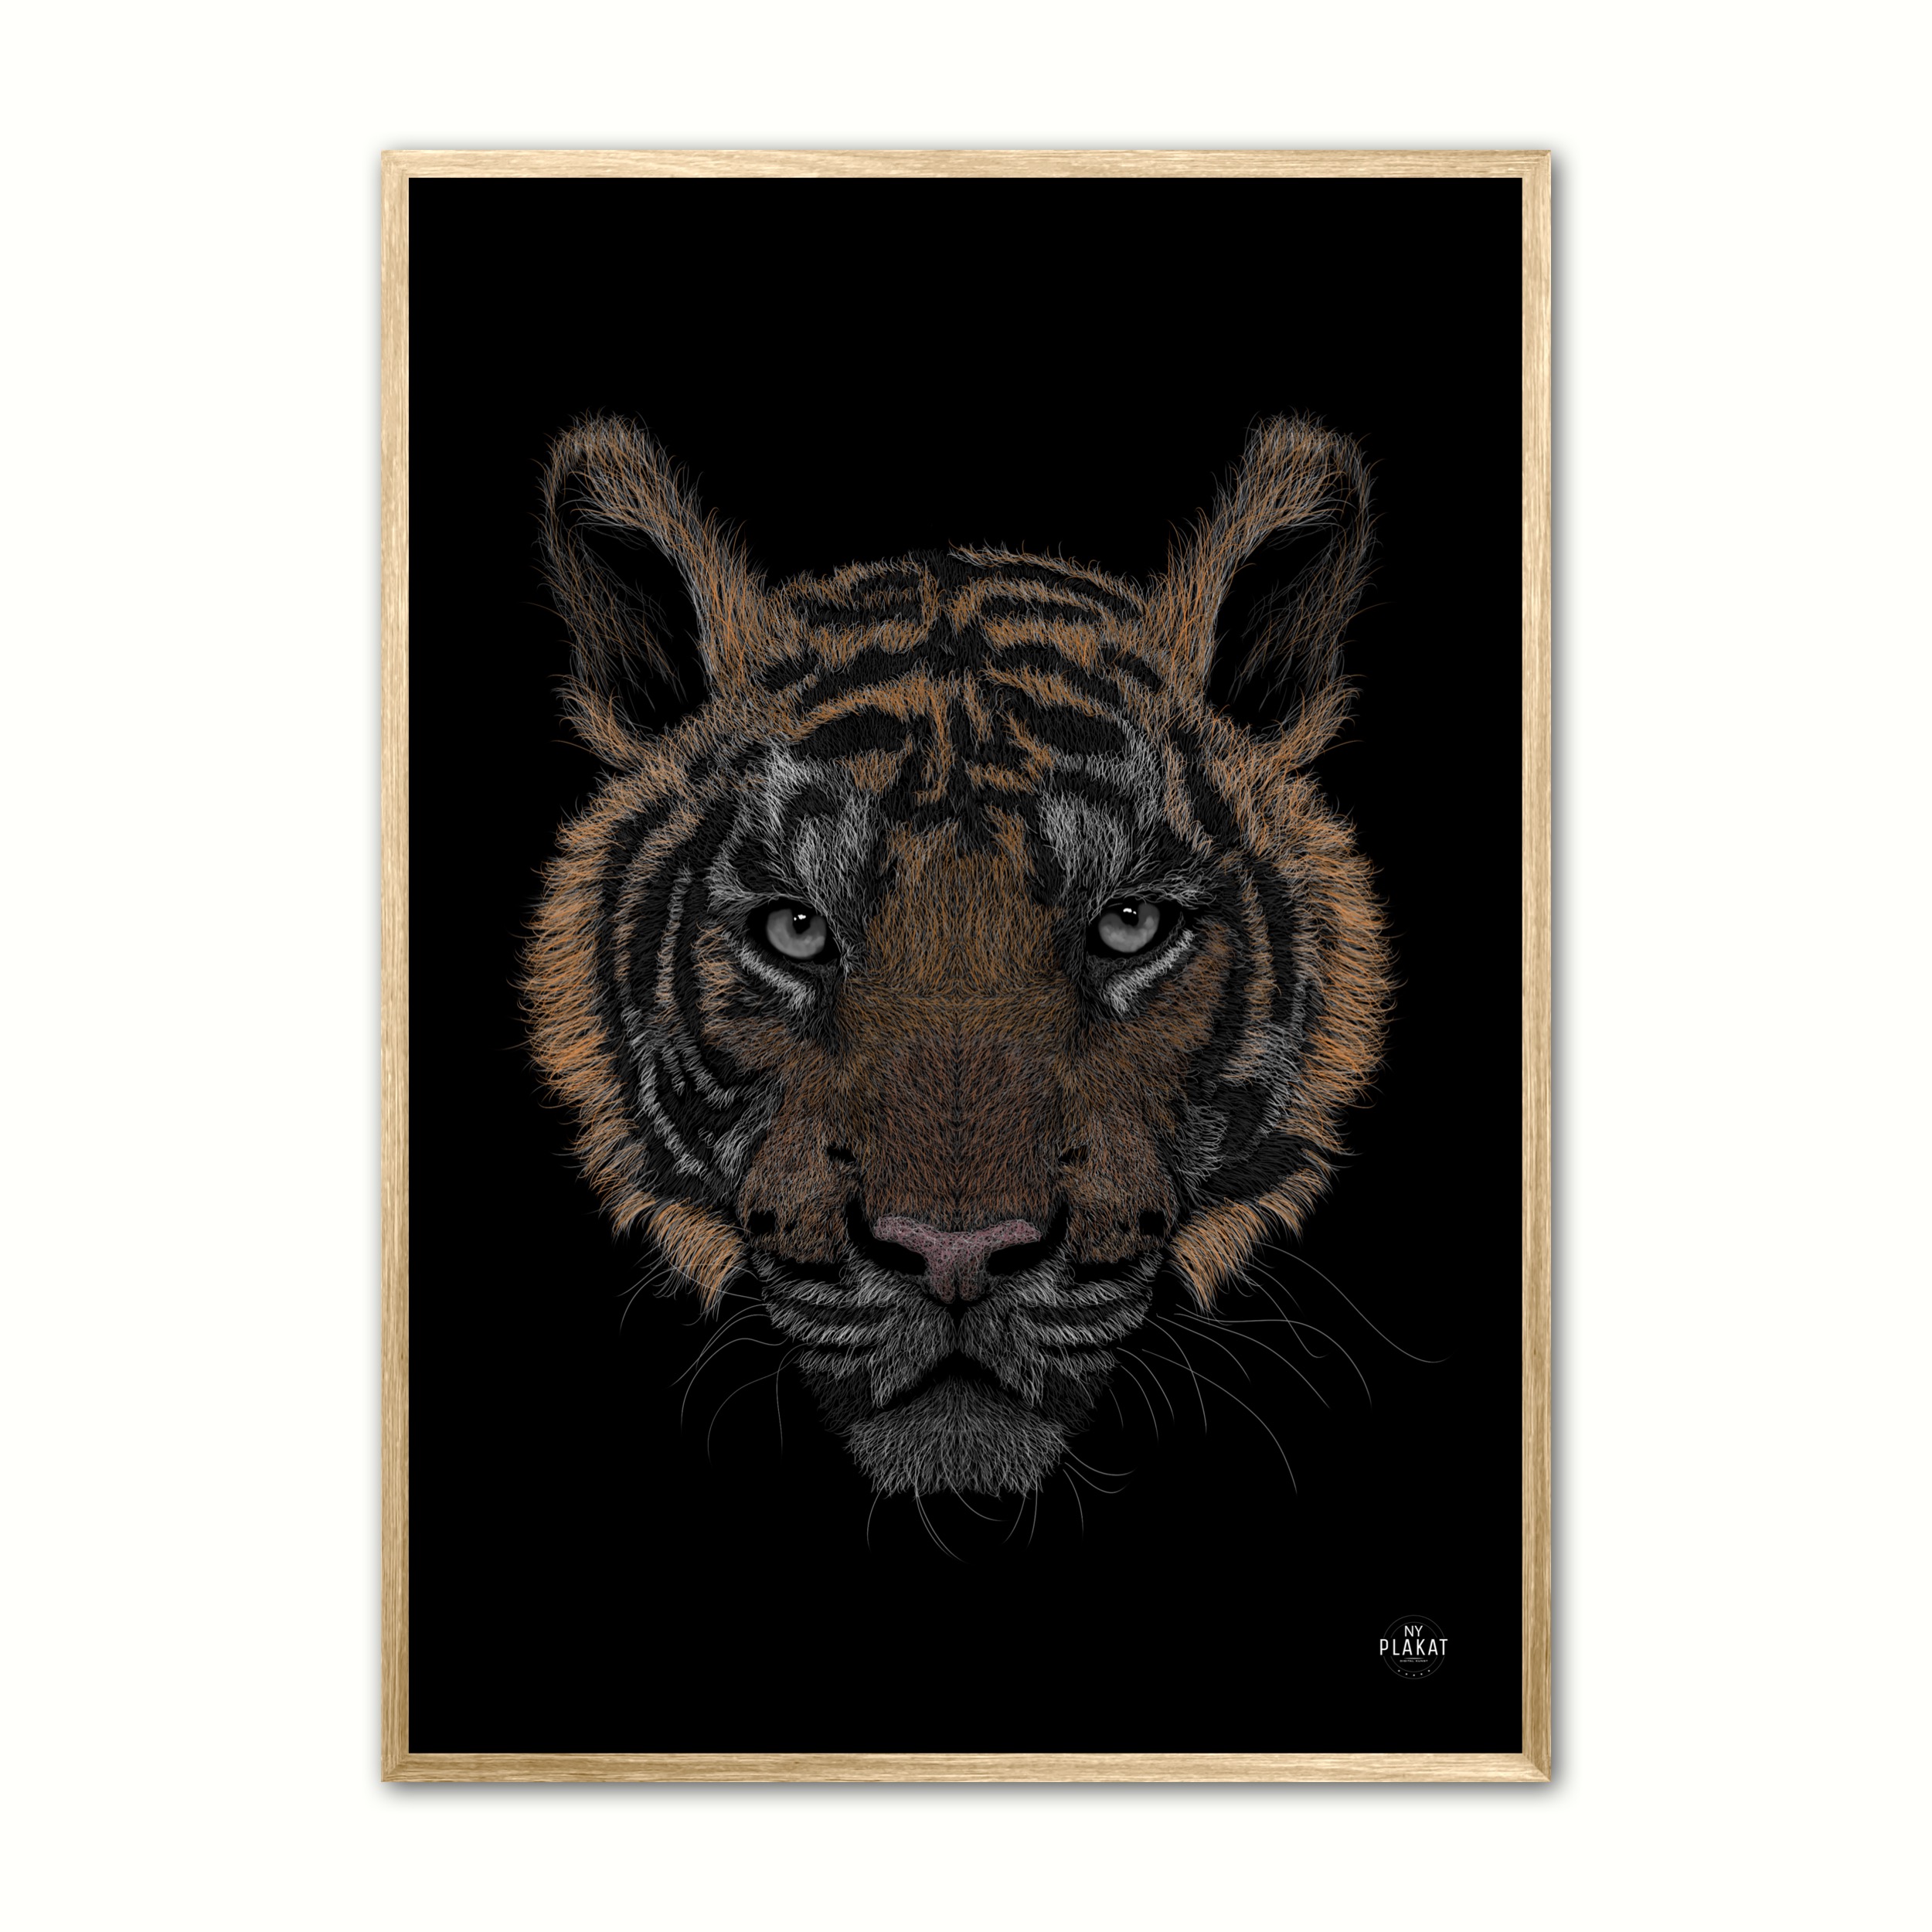 Se Bengalsk Tiger i farver plakat 21 x 29,7 cm (A4) hos Nyplakat.dk